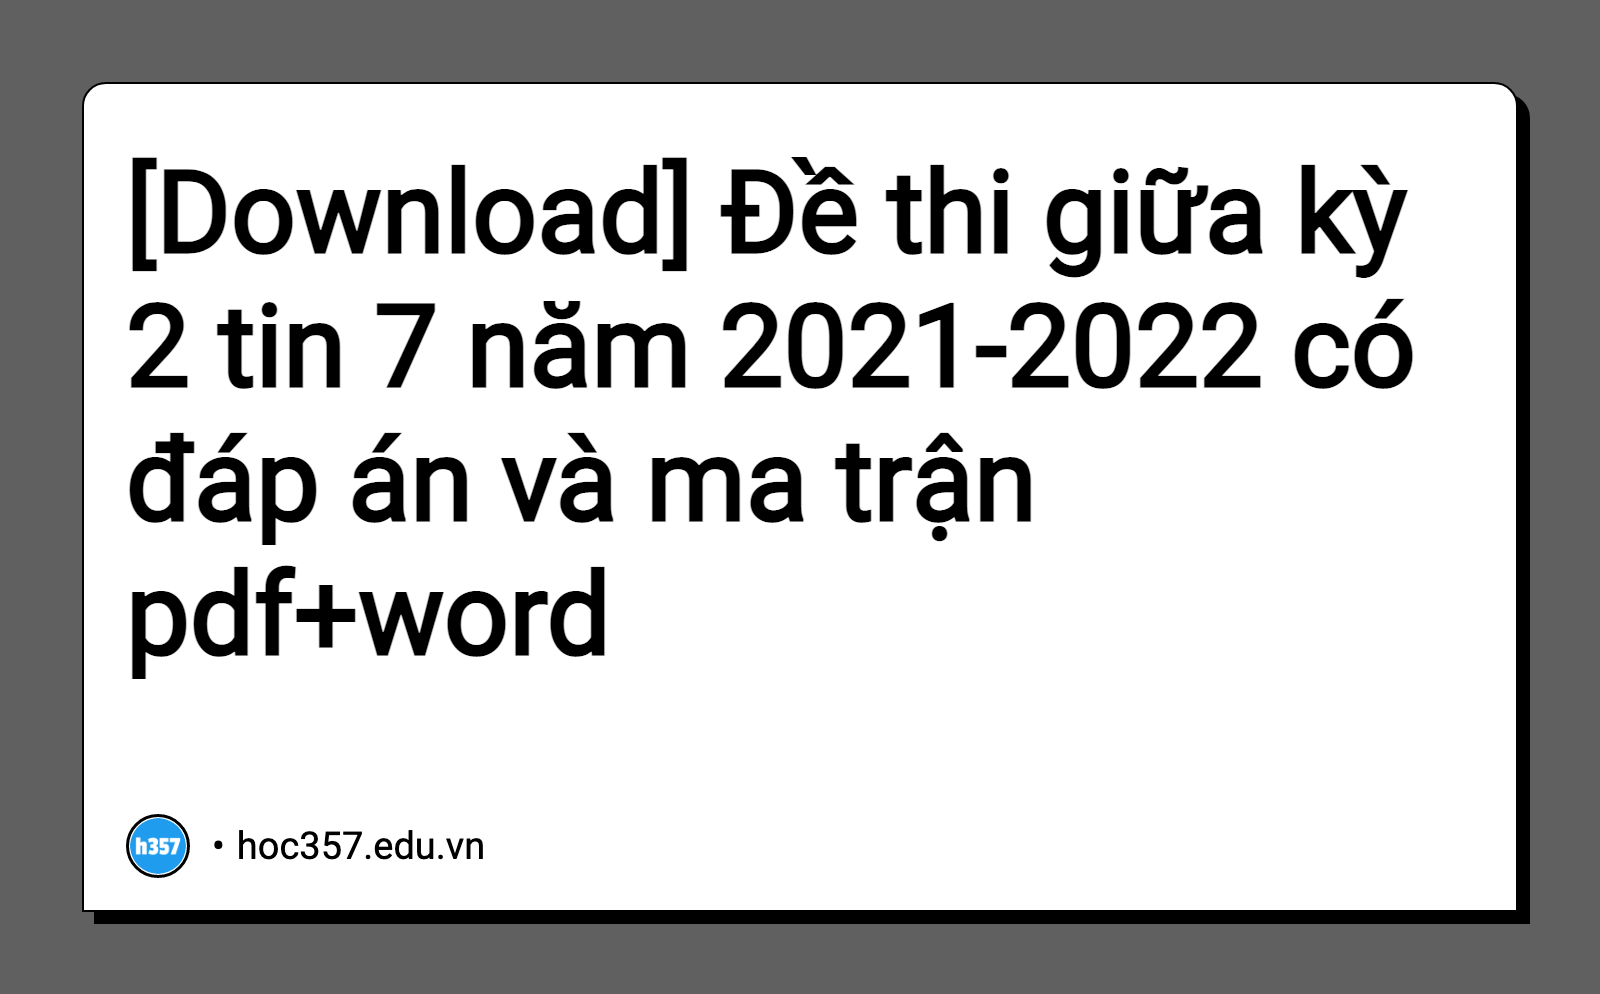 Hình minh họa Đề thi giữa kỳ 2 tin 7 năm 2021-2022 có đáp án và ma trận